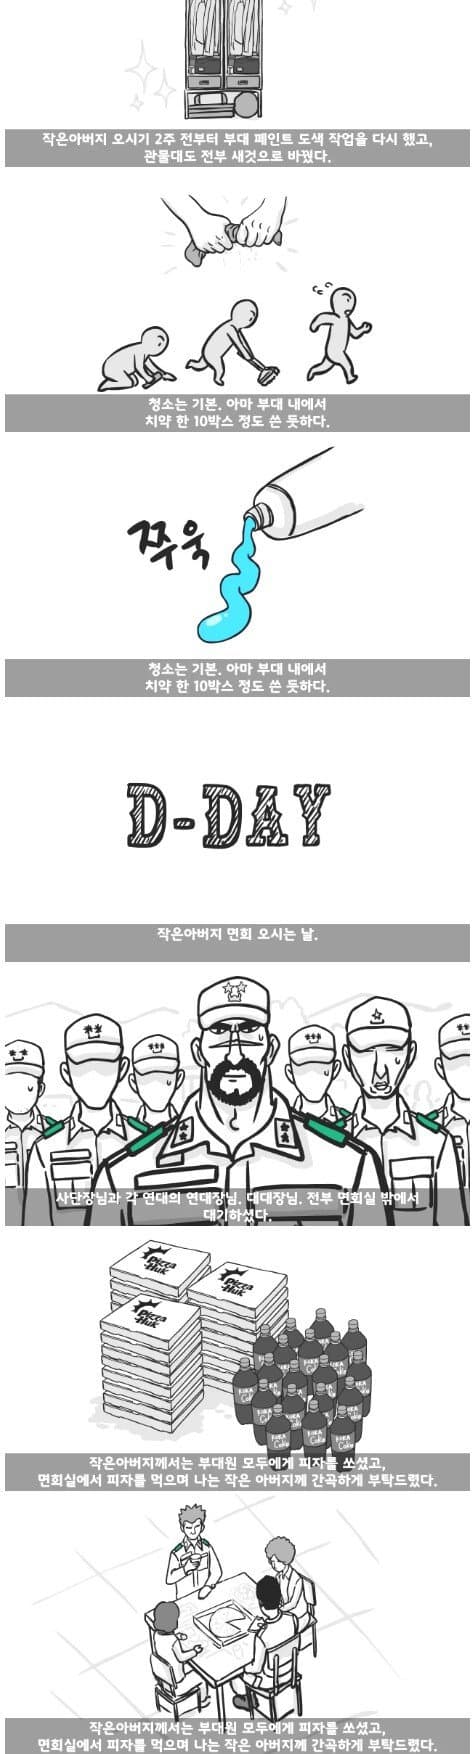 군대 4스타인 만화 24.jpg